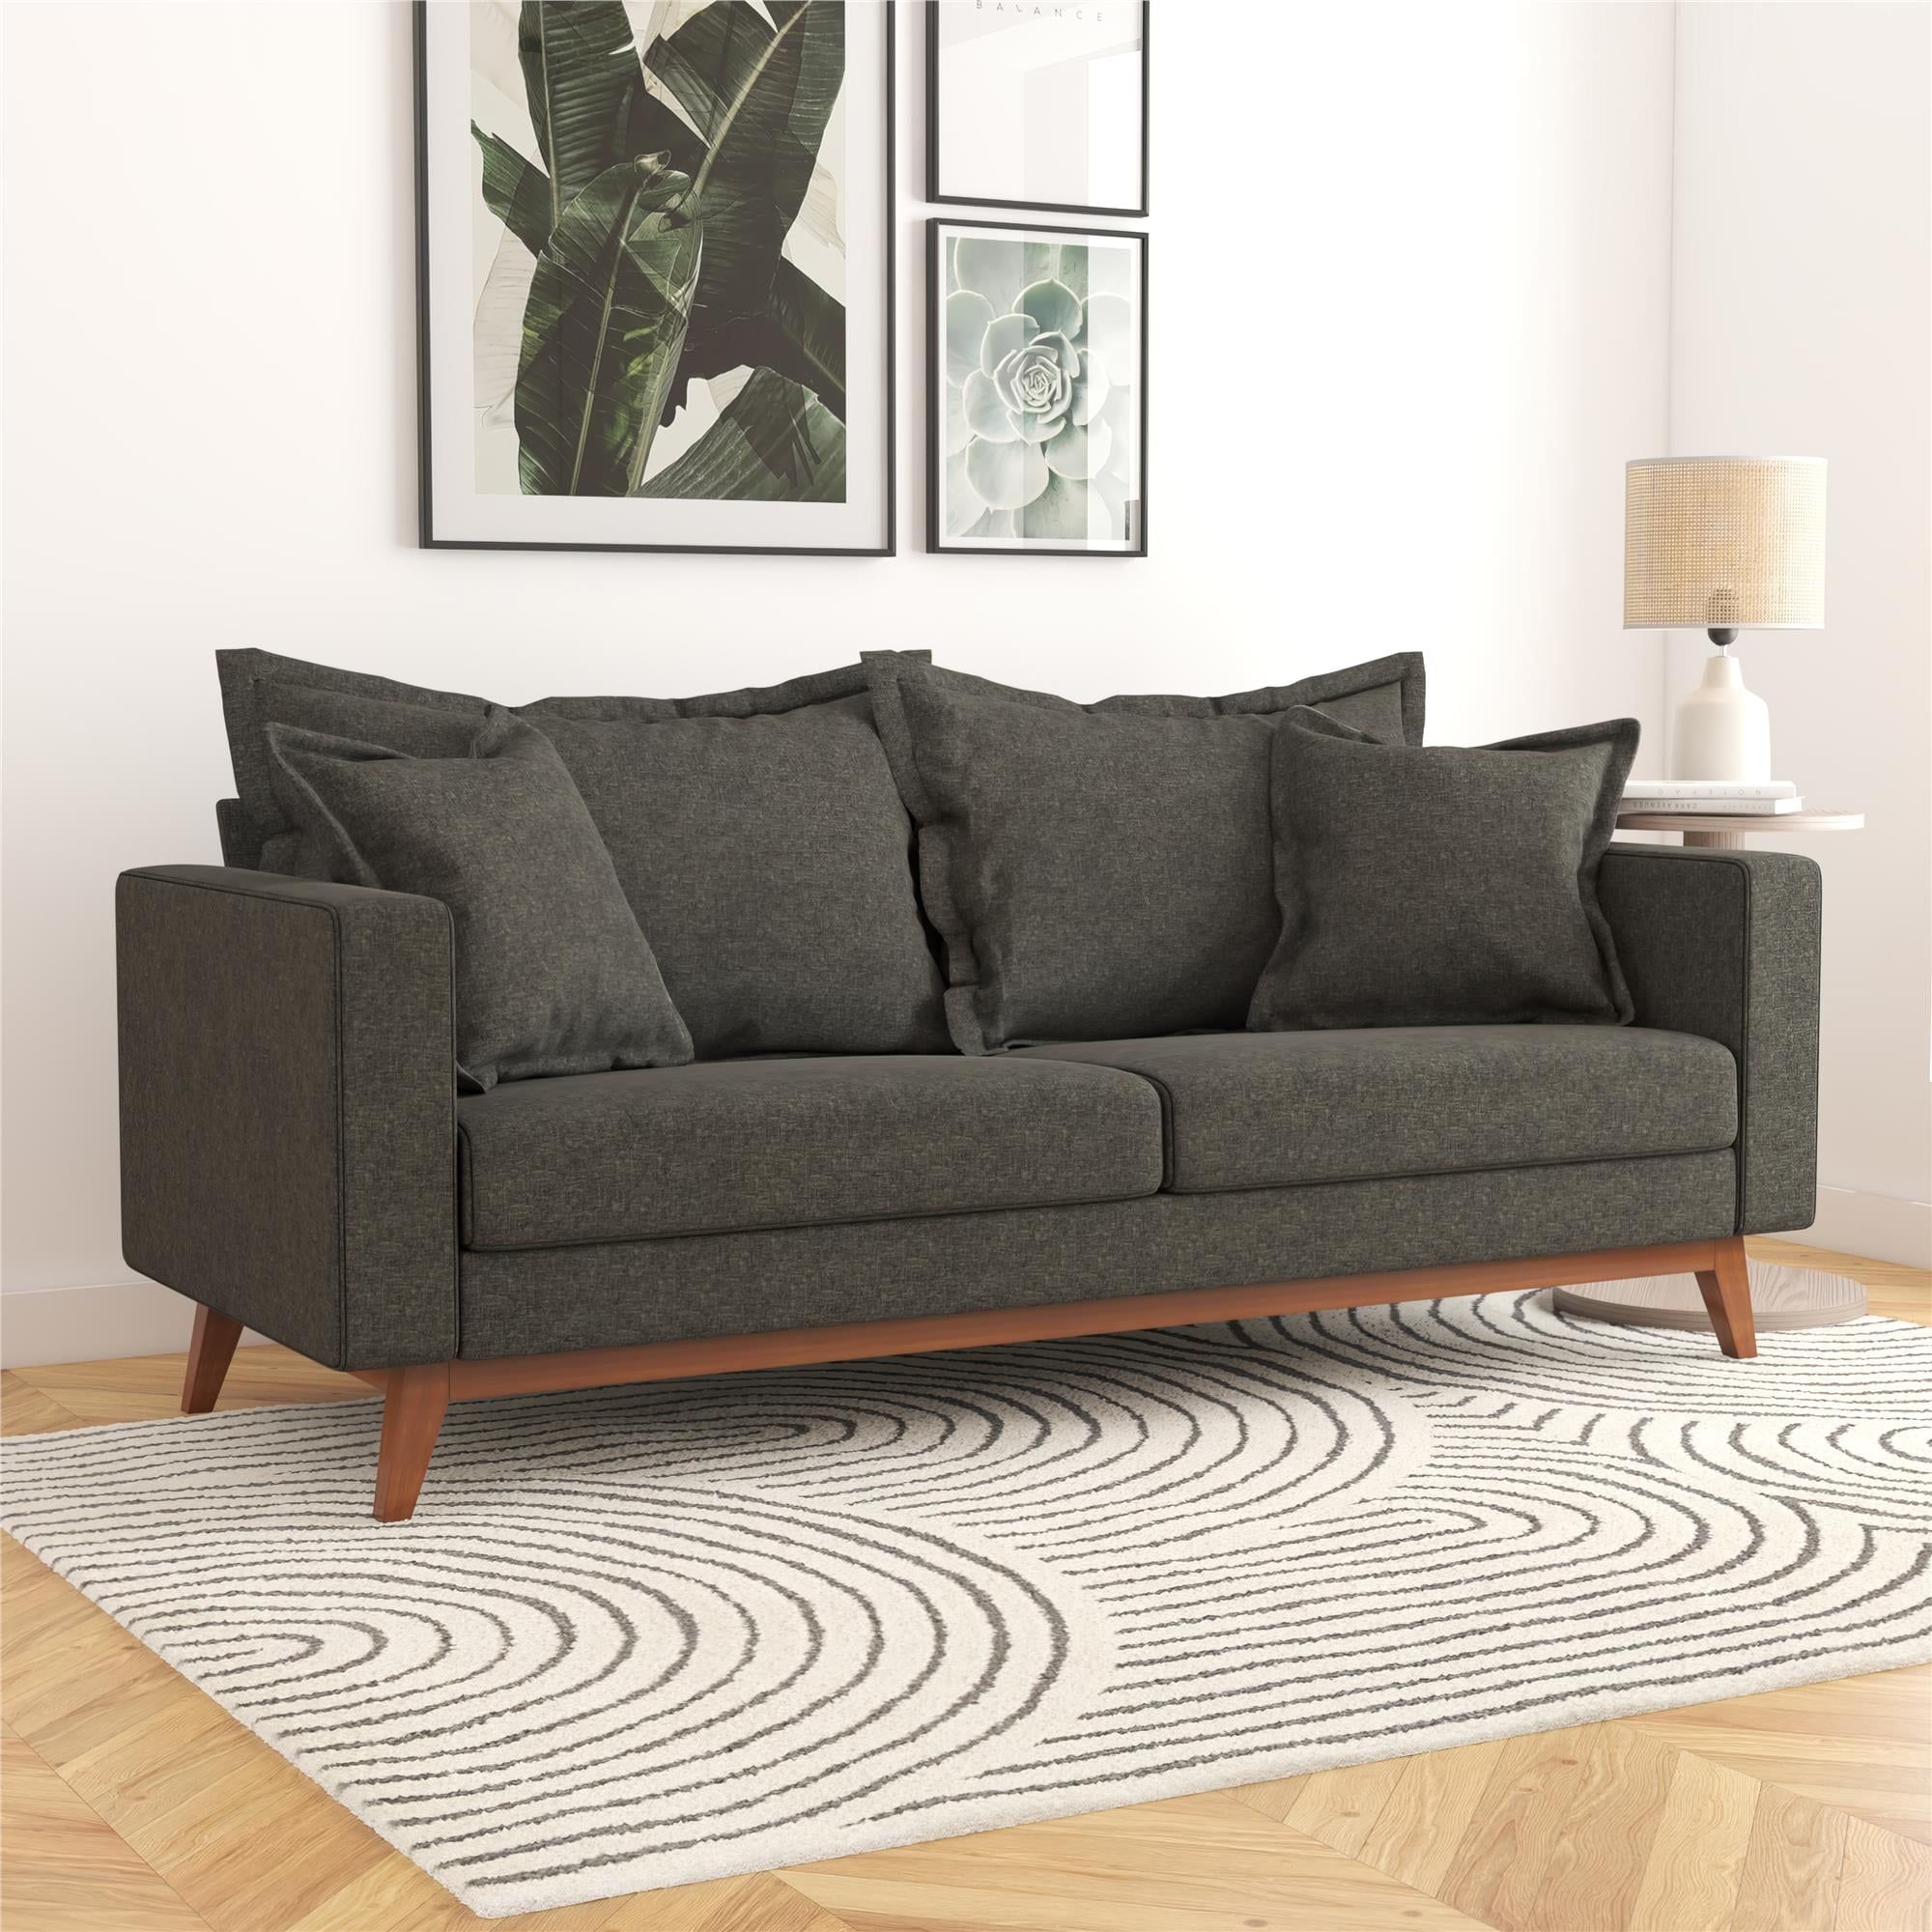 Dhp Miriam Pillowback Wood Base Sofa, Gray Linen – Walmart In Sofas With Pillowback Wood Bases (View 9 of 20)